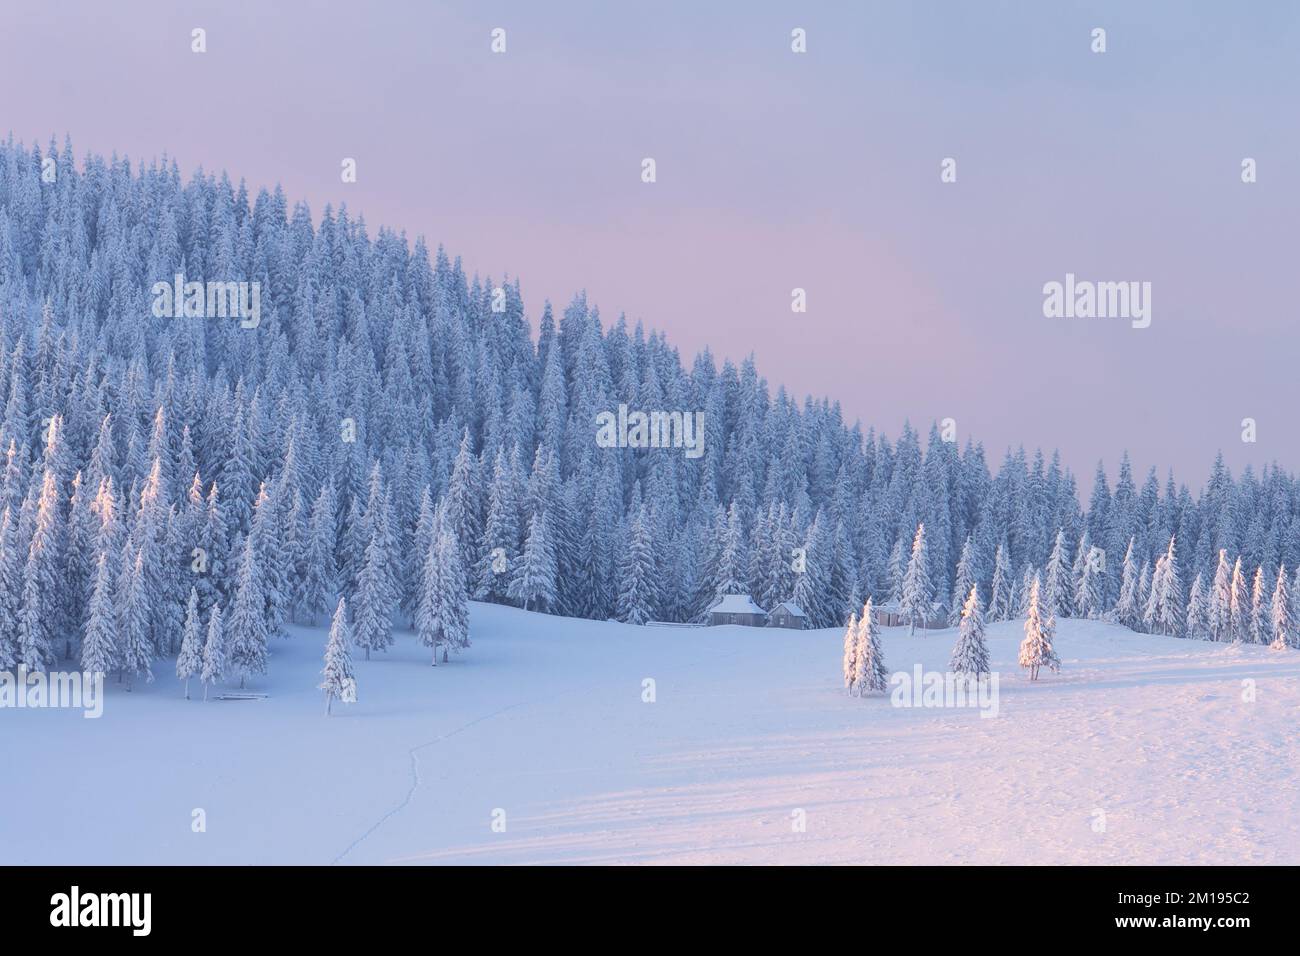 Wintermorgendslandschaft mit einem Fichtenwald bedeckt mit Schnee auf einem Berghang Stockfoto